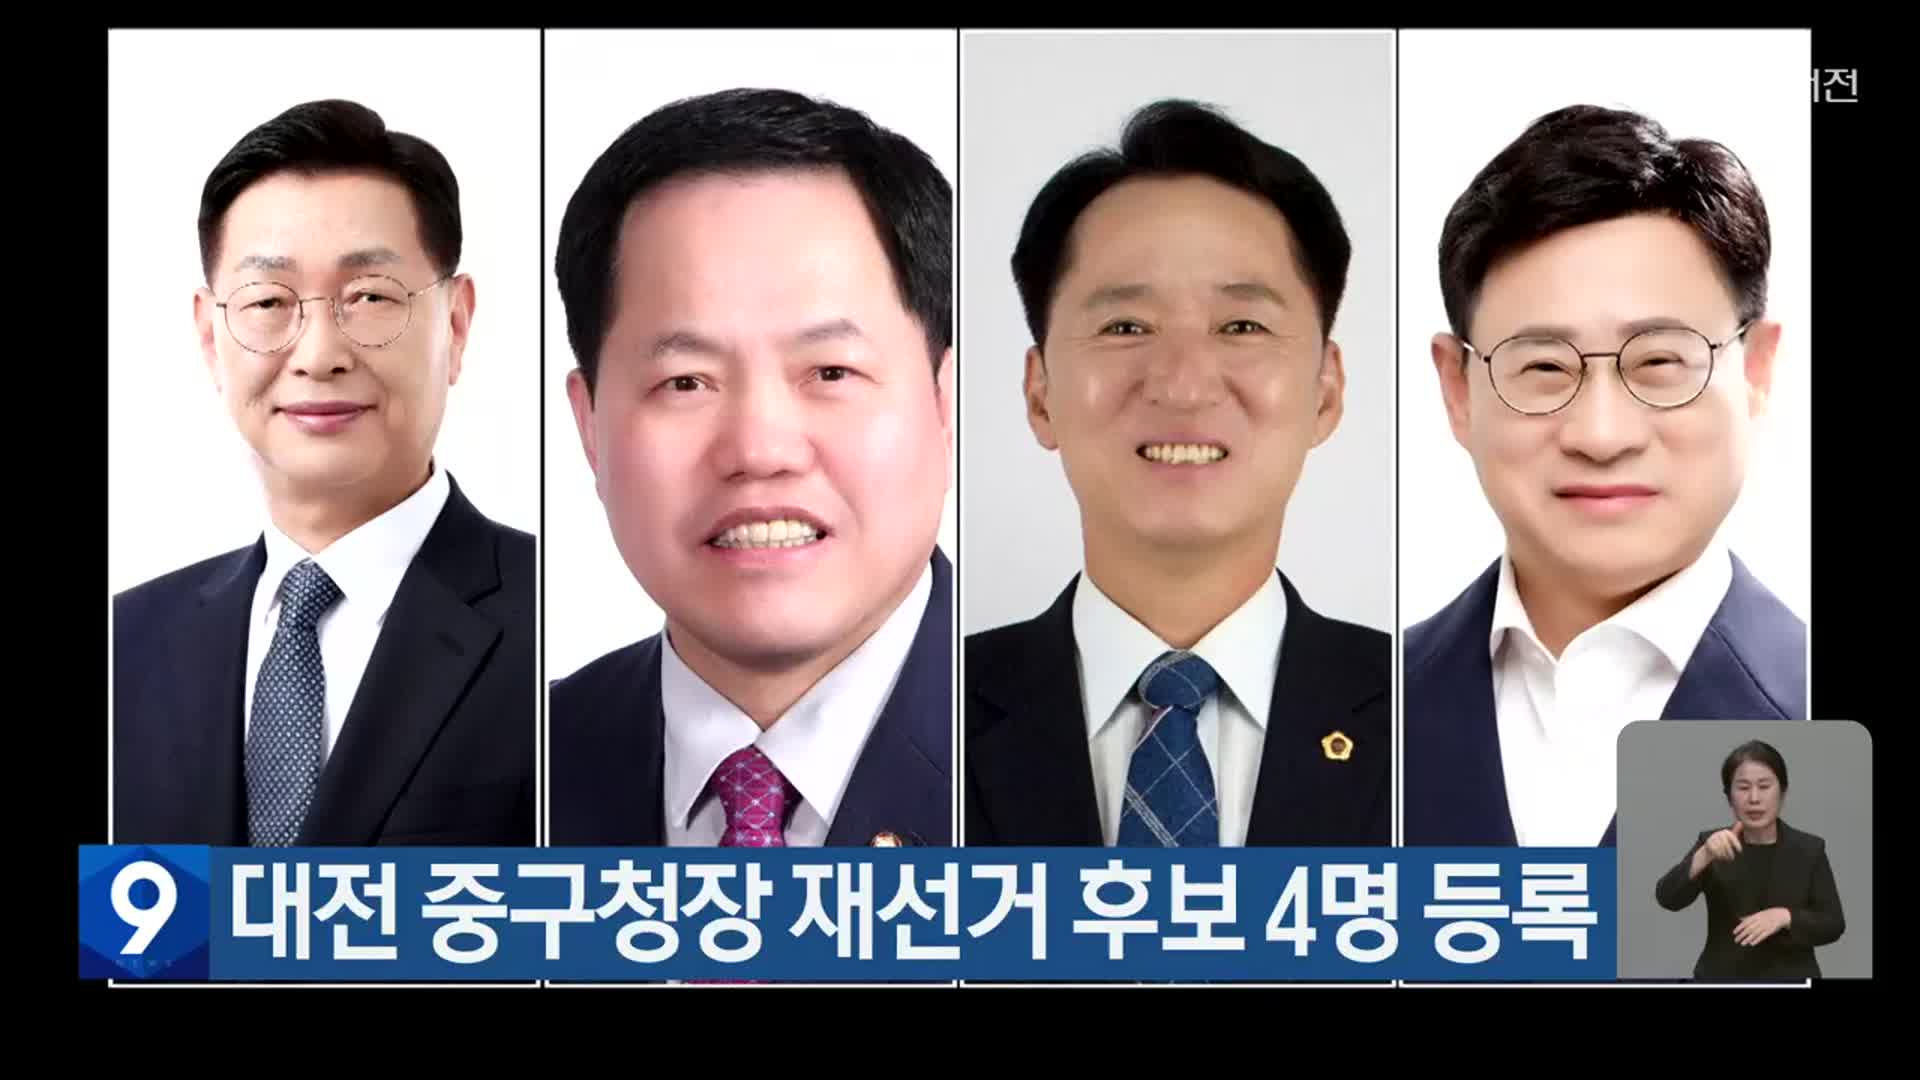 대전 중구청장 재선거 후보 4명 등록